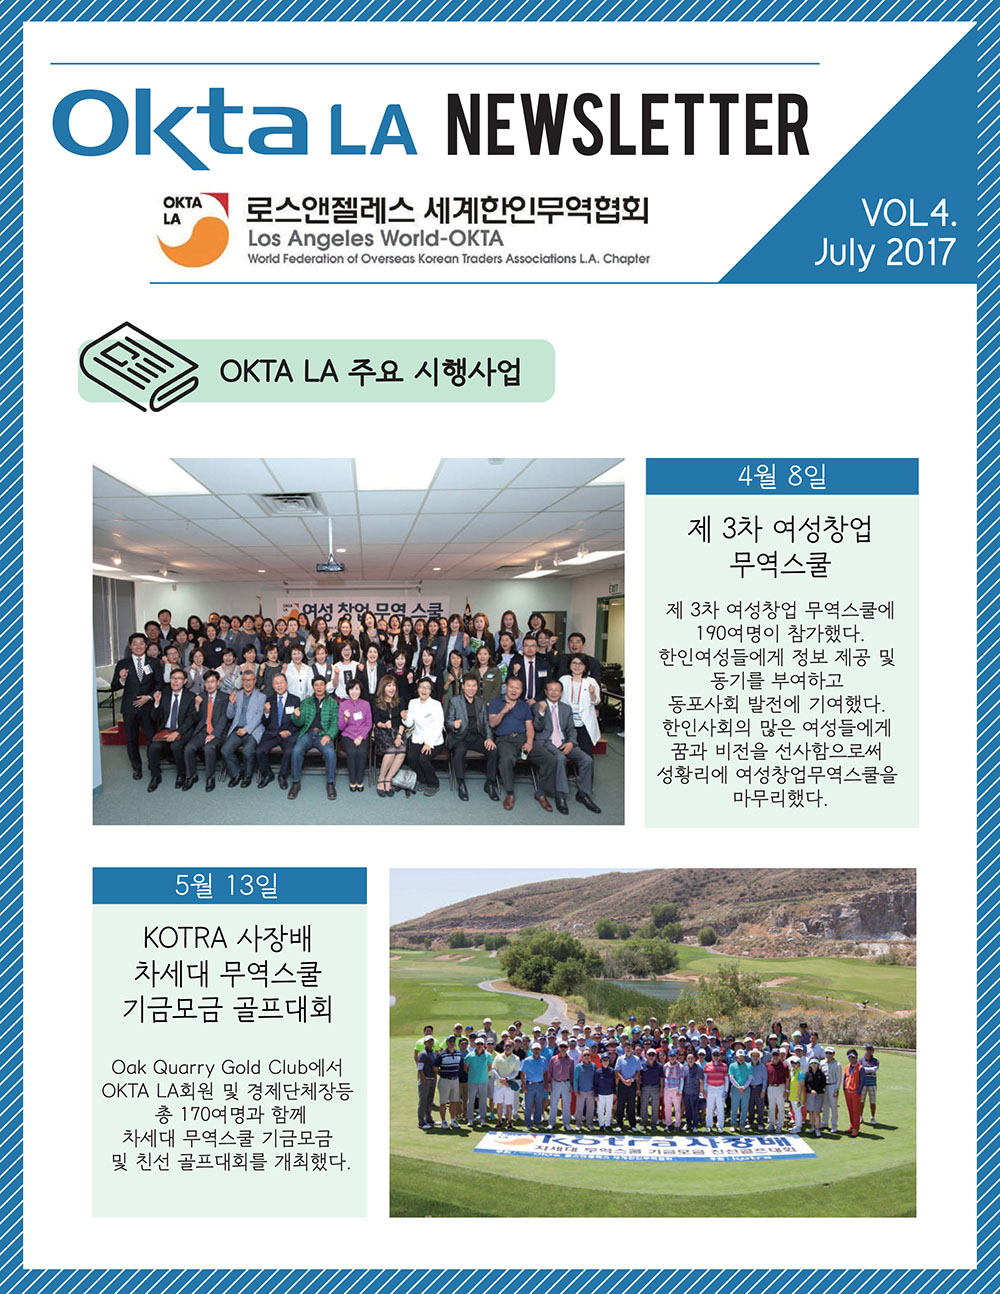 2017 OKTA LA 뉴스레터<br> 4월호 Vol 4